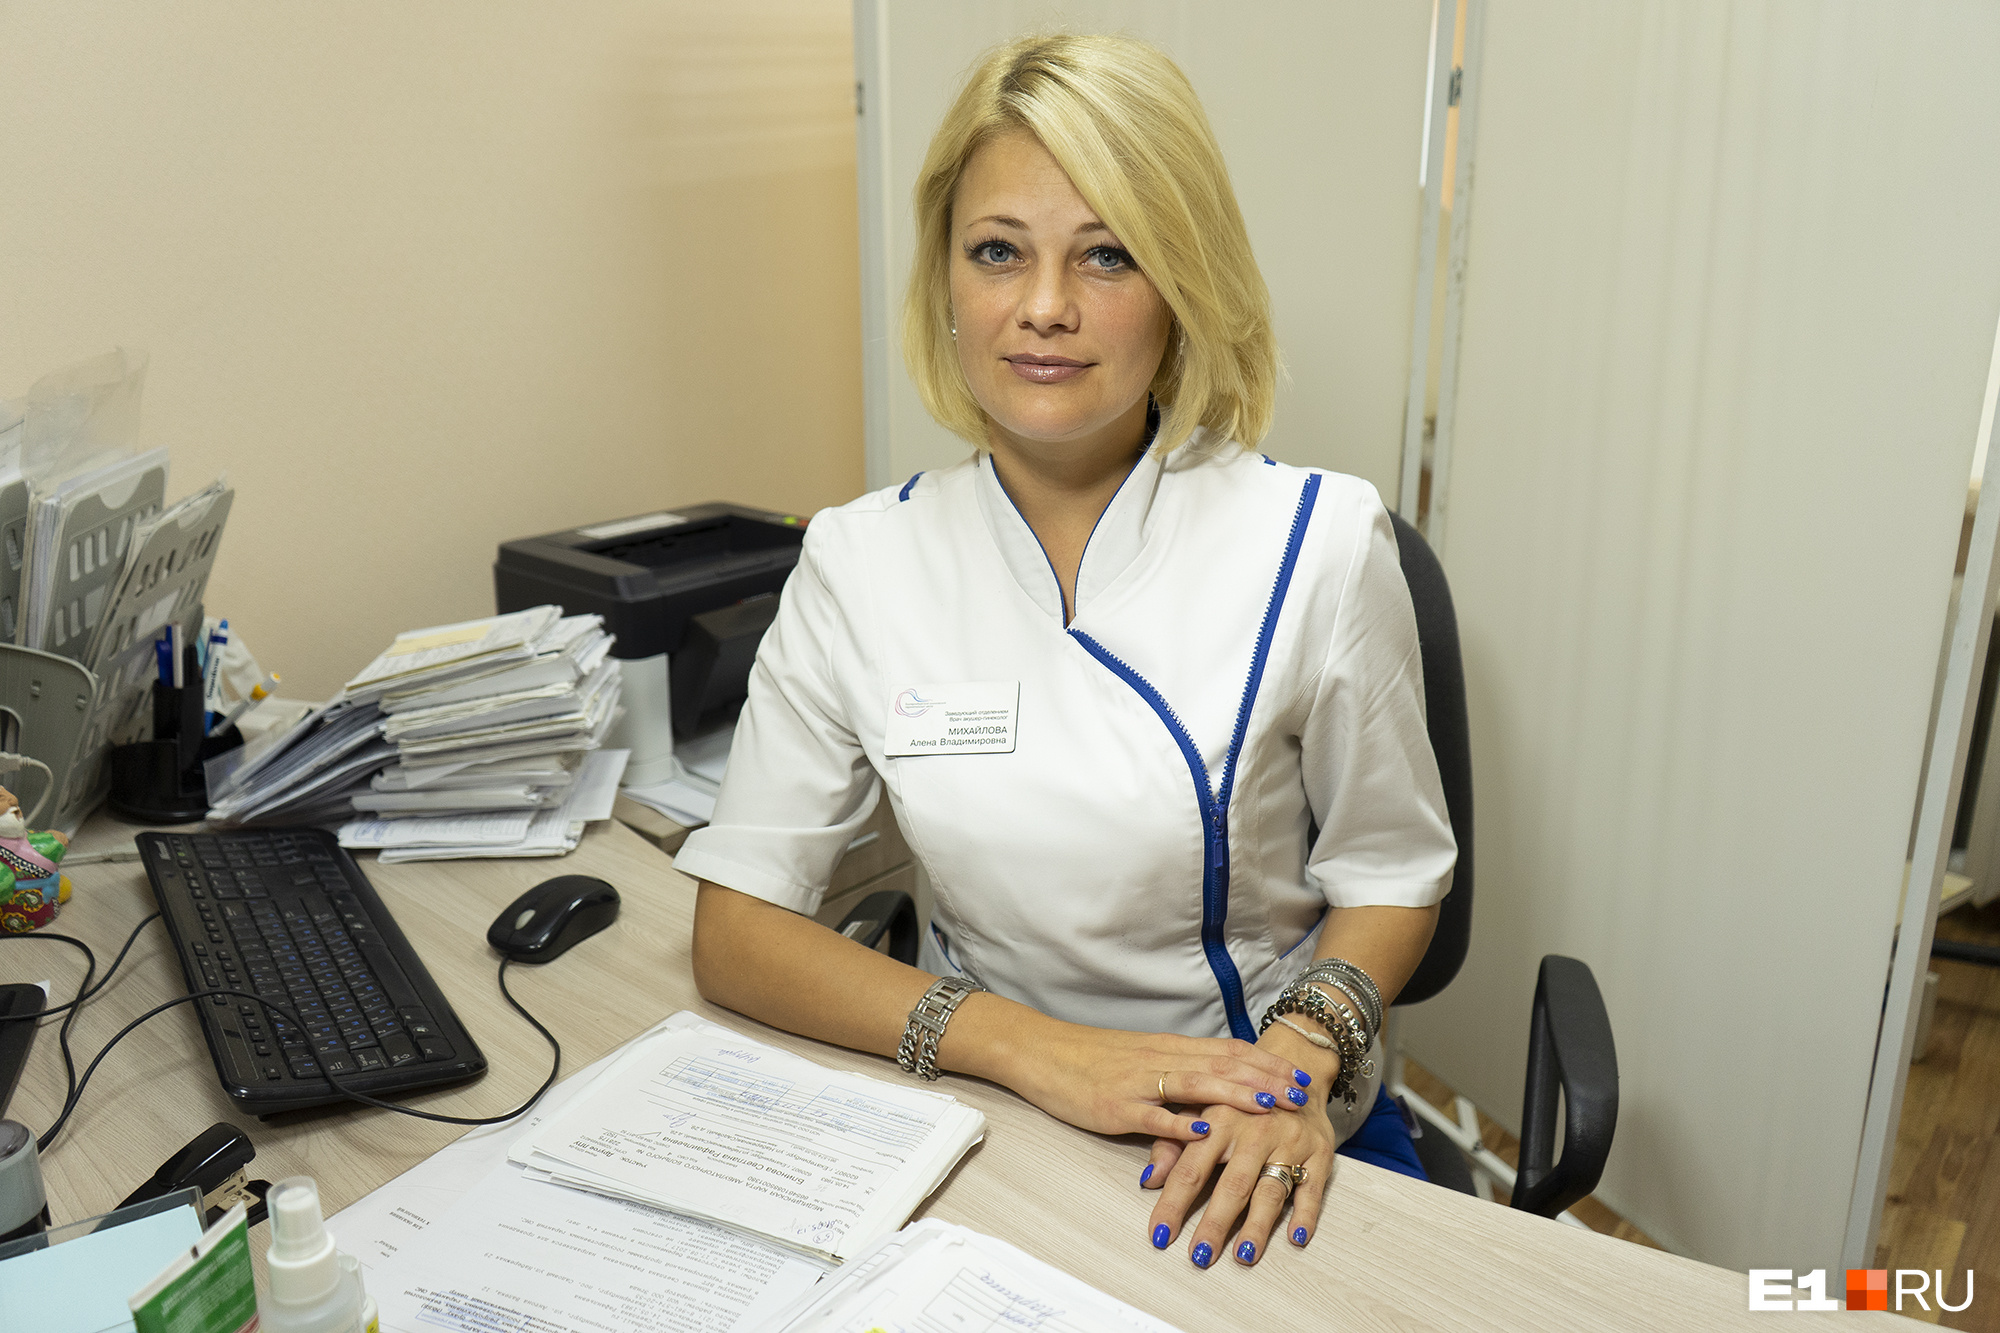 Акушер-гинеколог, заведующая отделением охраны репродуктивного здоровья екатеринбургского клинического перинатального центра Алёна Михайлова